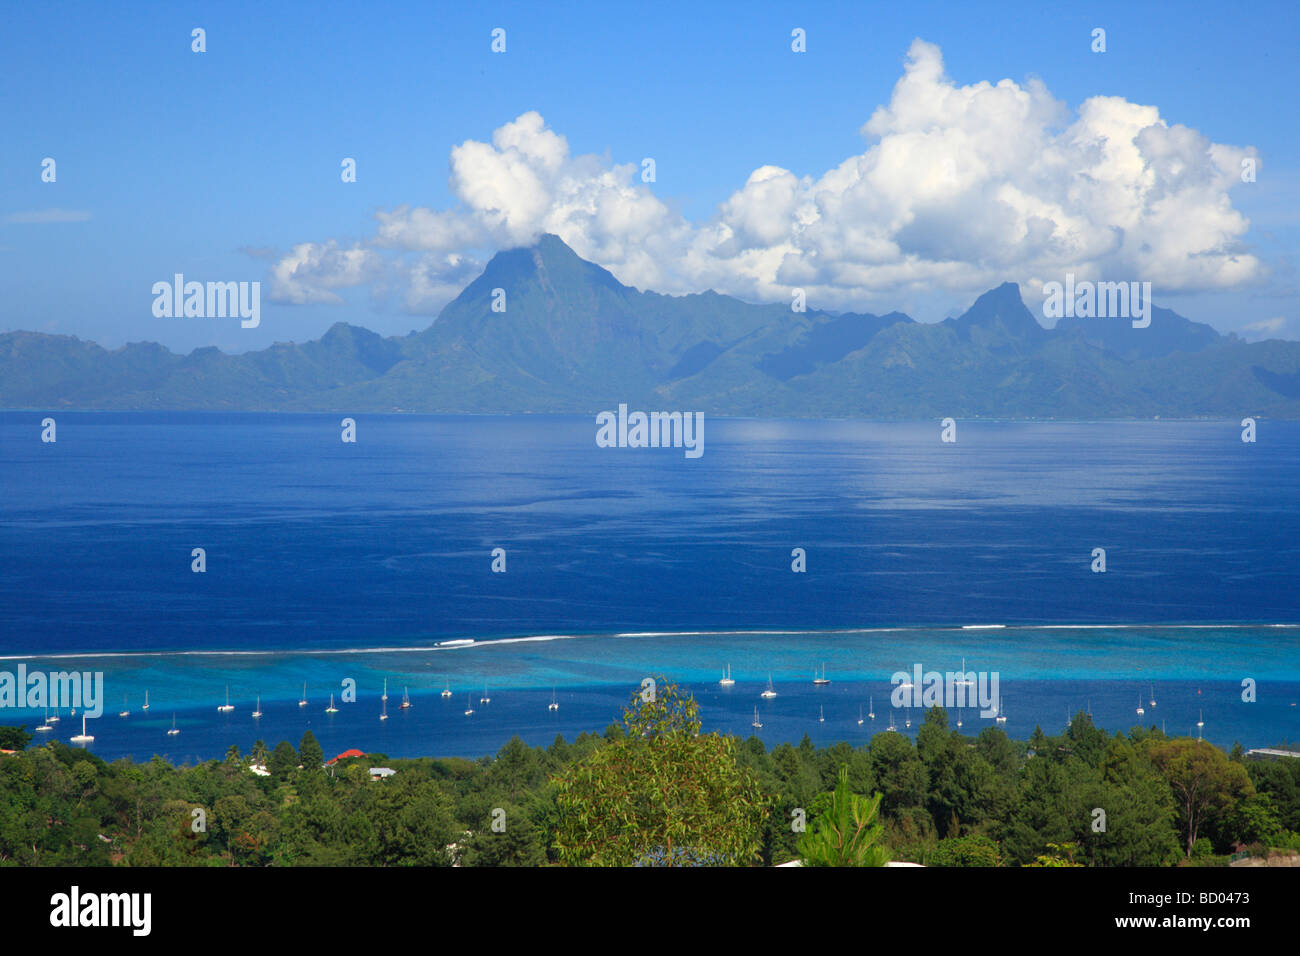 Moorea view from Tahiti, French Polynesia Stock Photo